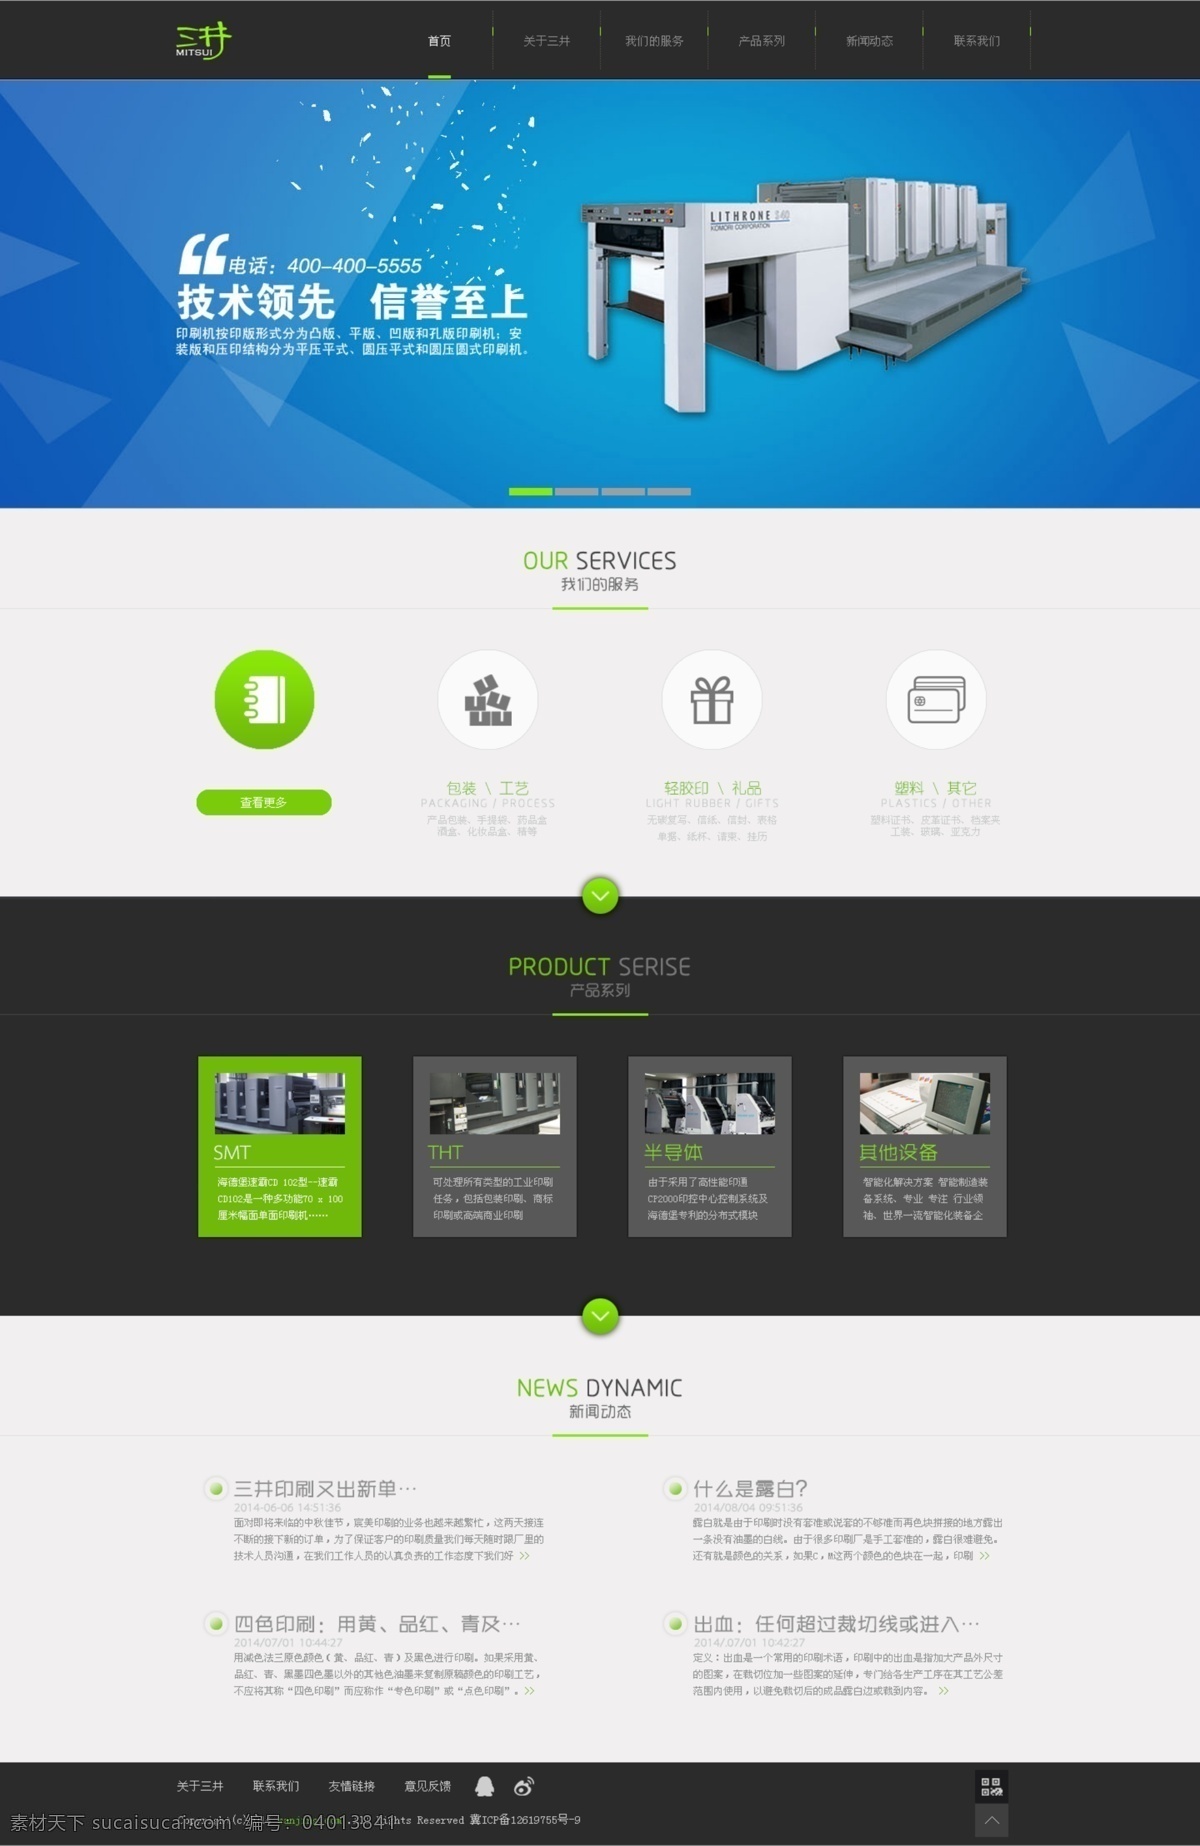 印刷设备网站 企业网站 网站 网站首页 网站设计 web 界面设计 中文模板